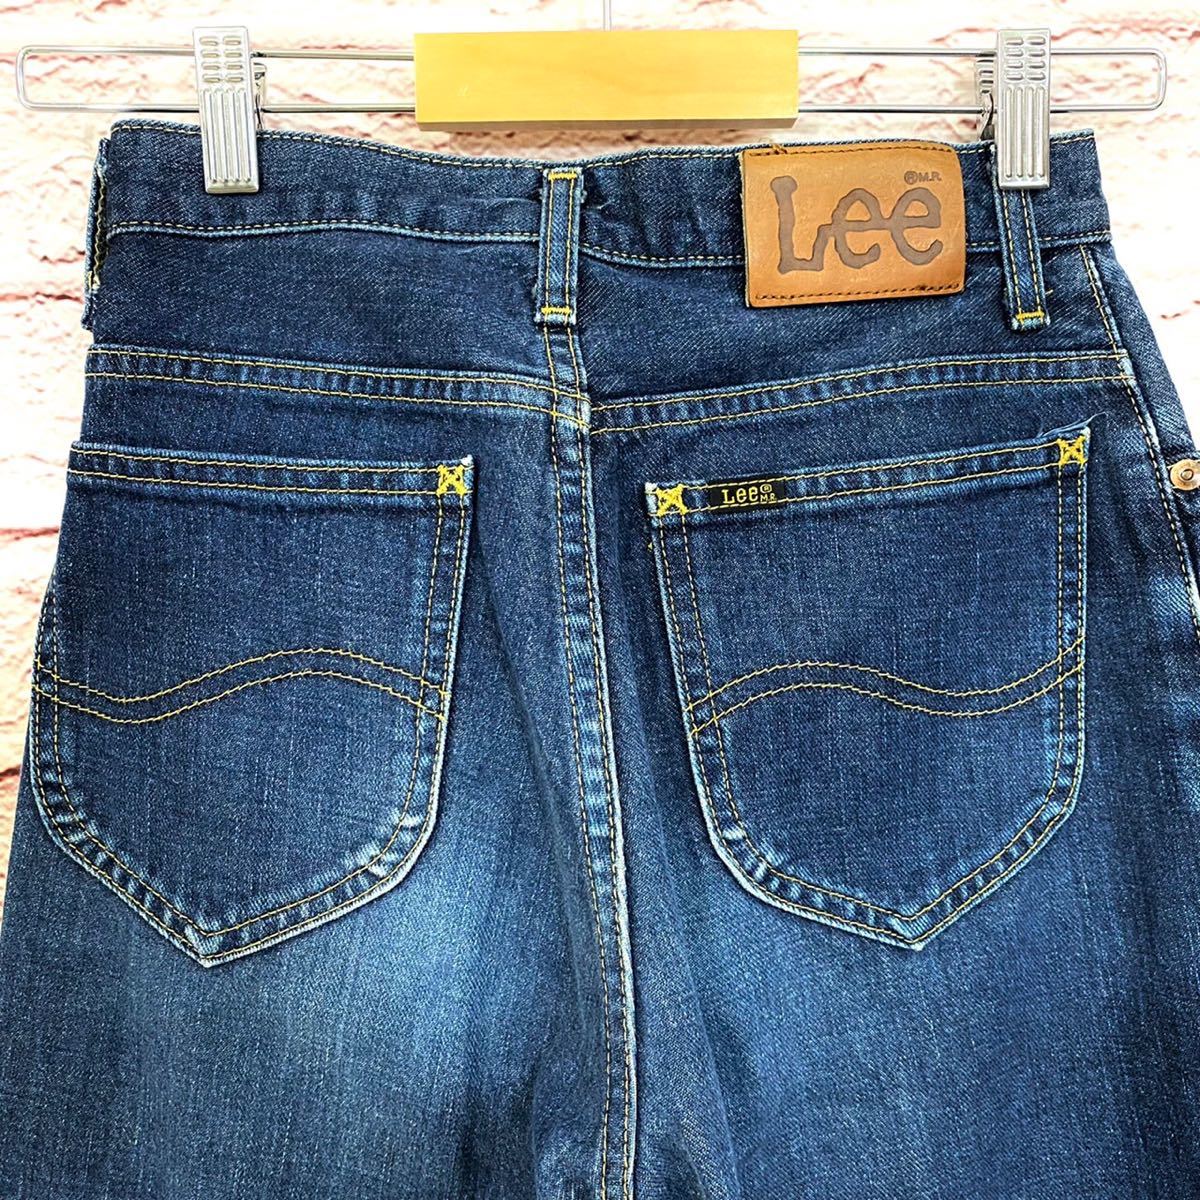  ошибка Lee LEE женский низ Denim брюки джинсы распорка Denim 